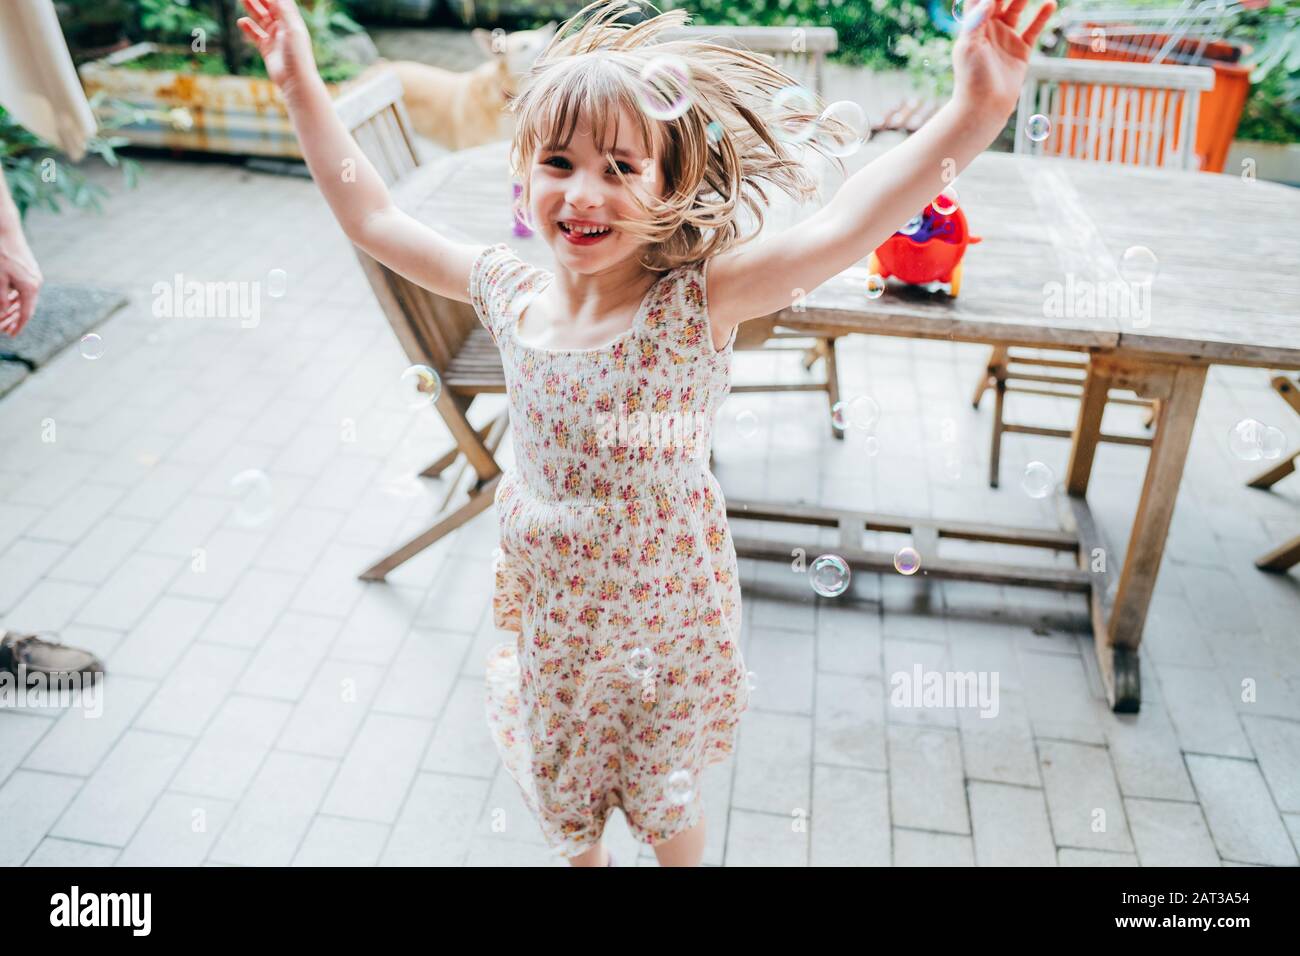 Weibliches Kind, das mit Seife spielt - Spaß, Glück und Freude am Konzept Stockfoto